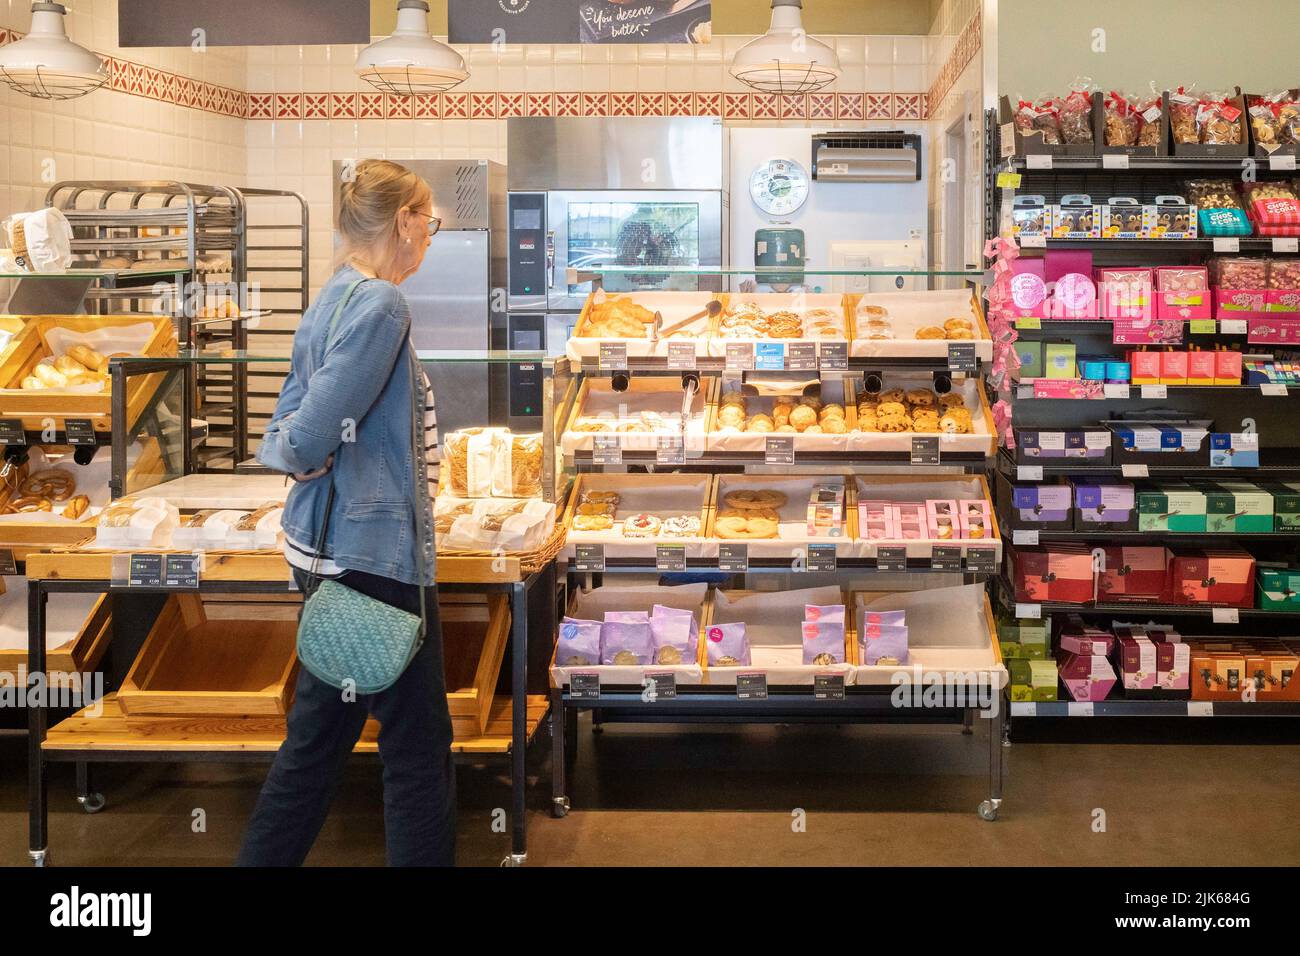 Eine ältere Frau, die Brot und Kuchen in einer M&S Food Hall auswählt und kauft Stockfoto